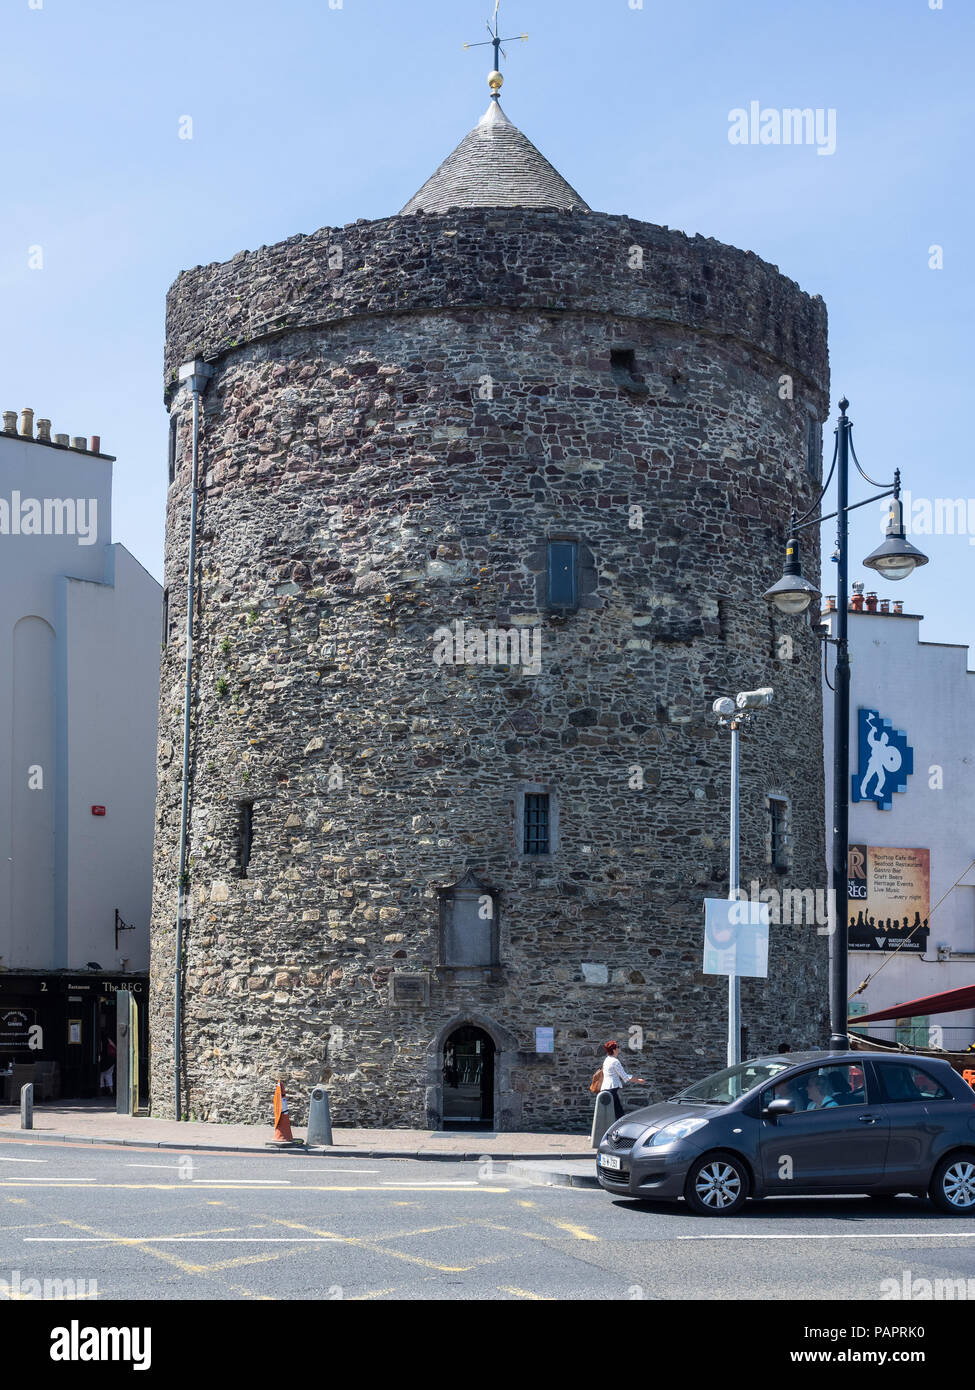 De Torre de Reginald, Waterford, Condado de Waterford, República de Irlanda. La construcción civil más antigua de Irlanda Foto de stock